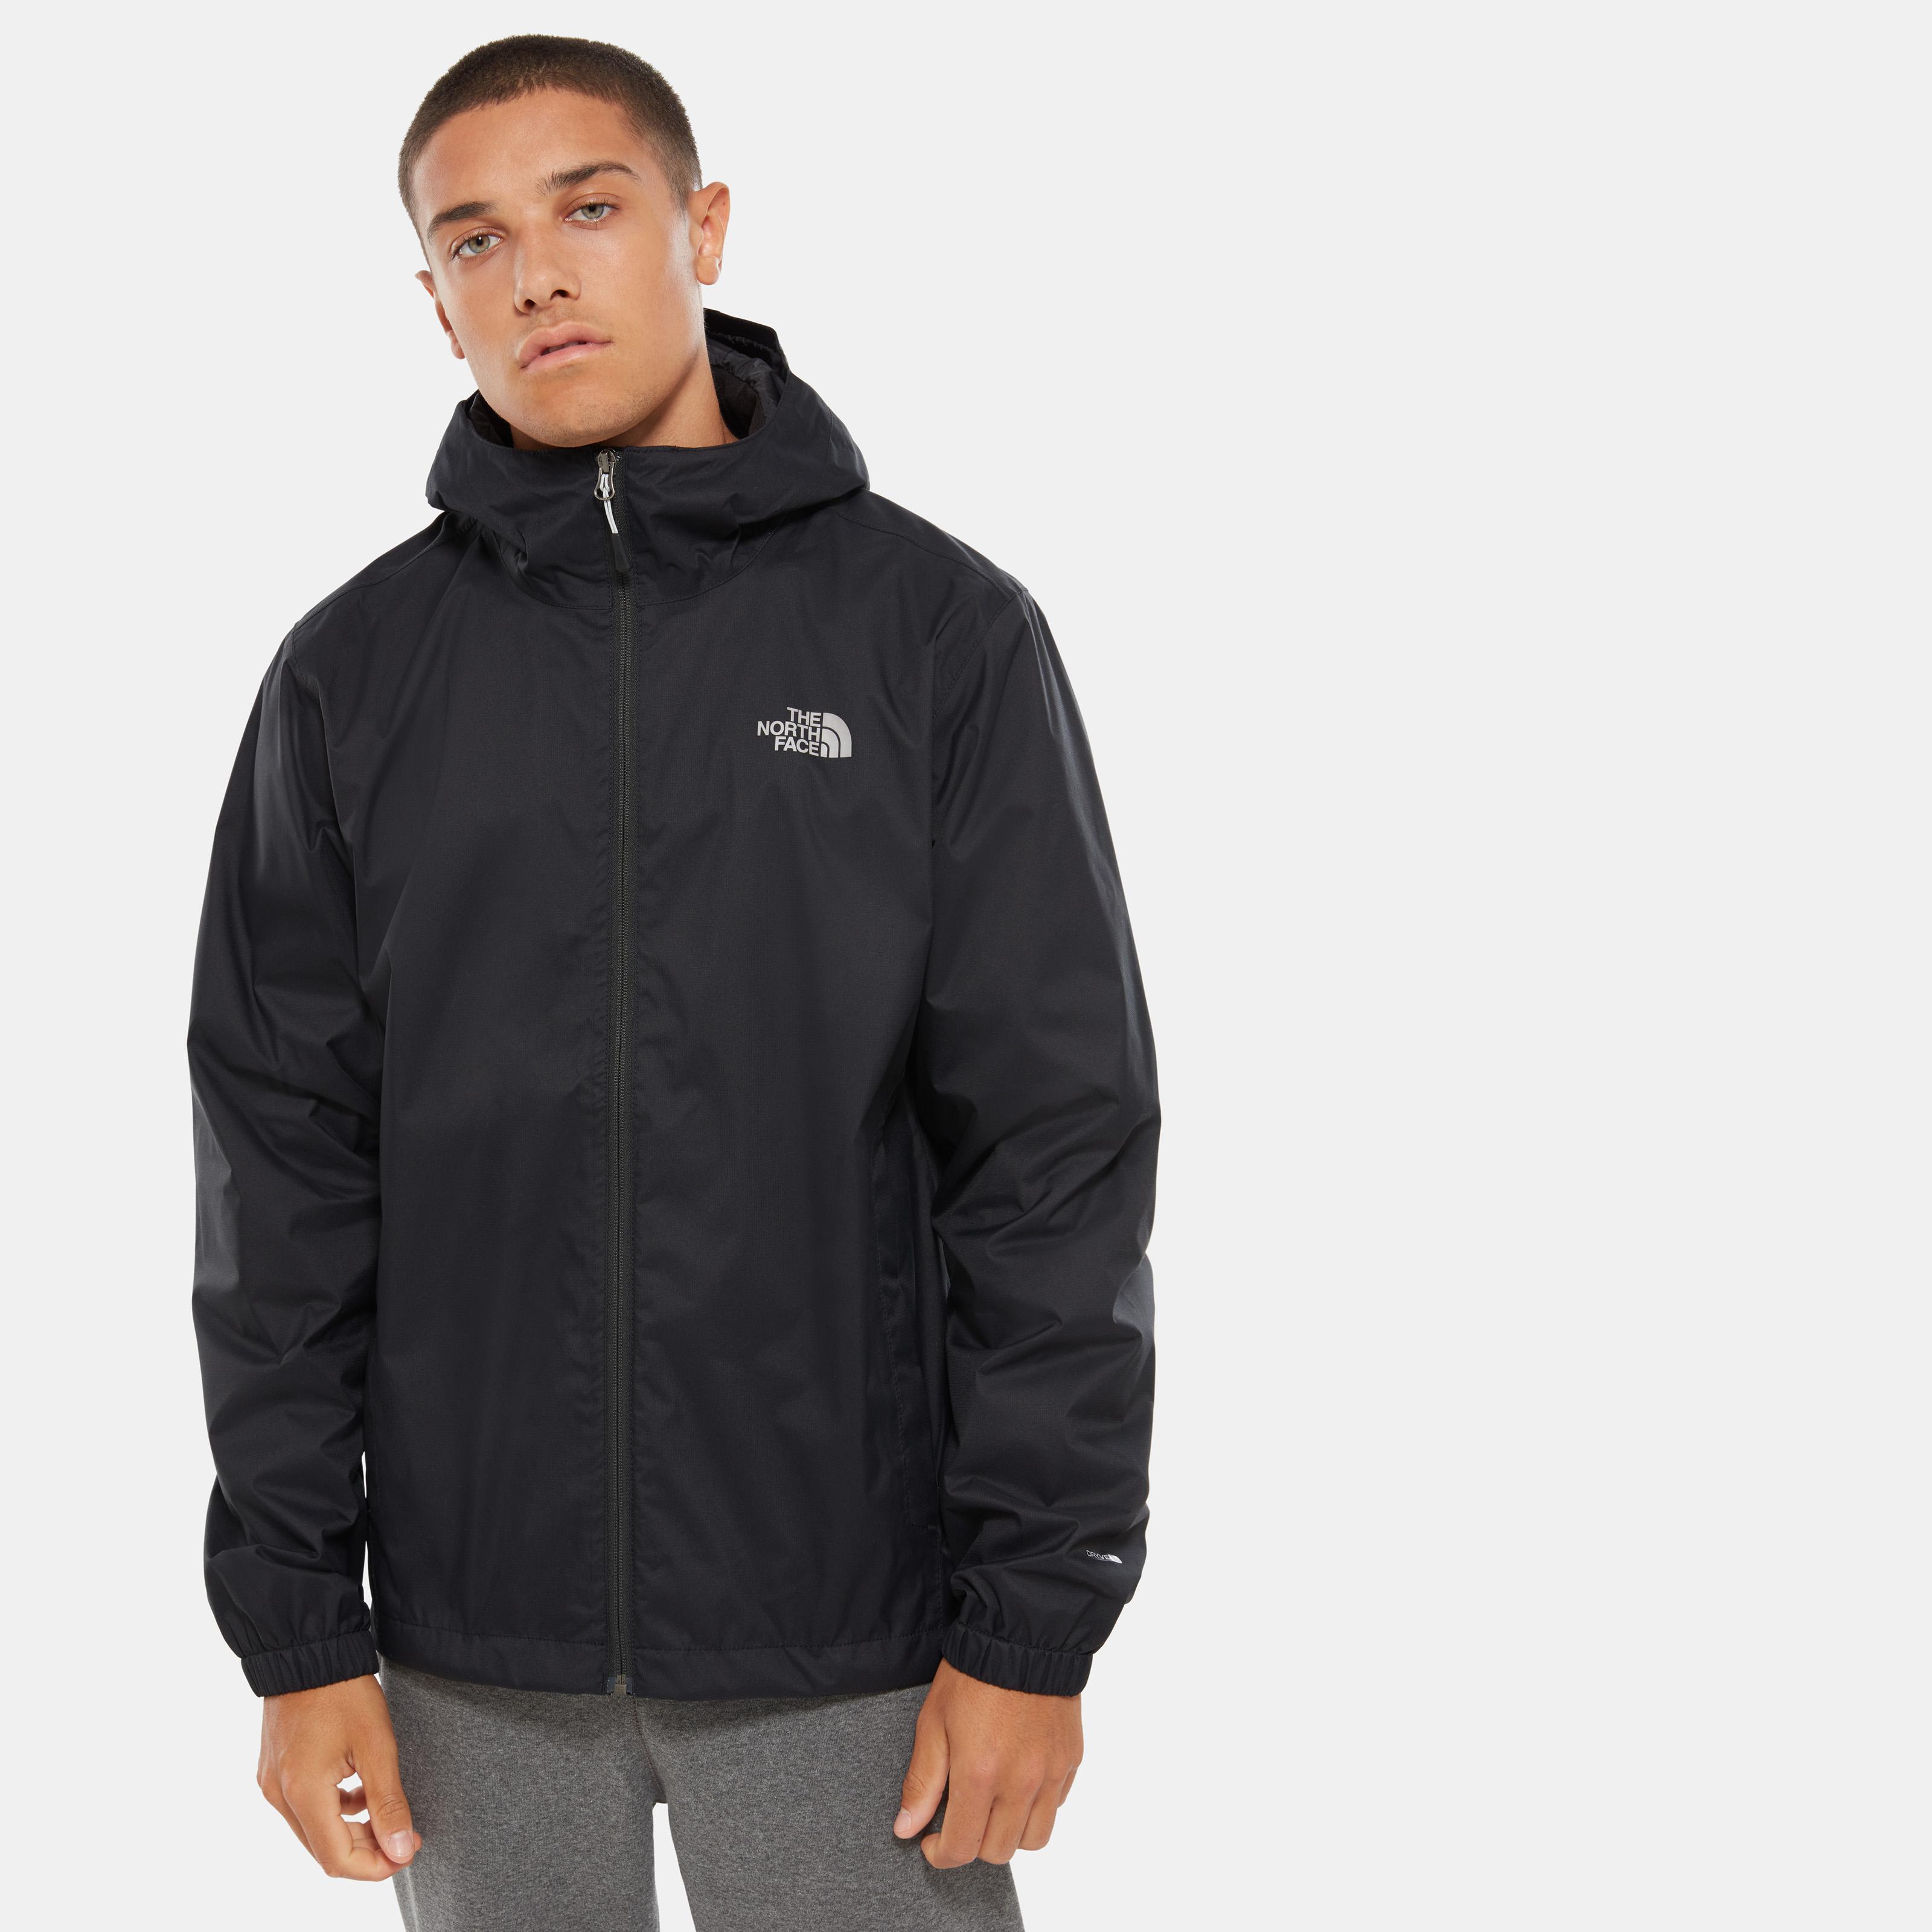 Verzorgen zeewier Regeneratief The North Face Jacken für Herren im Online Shop von SportScheck kaufen